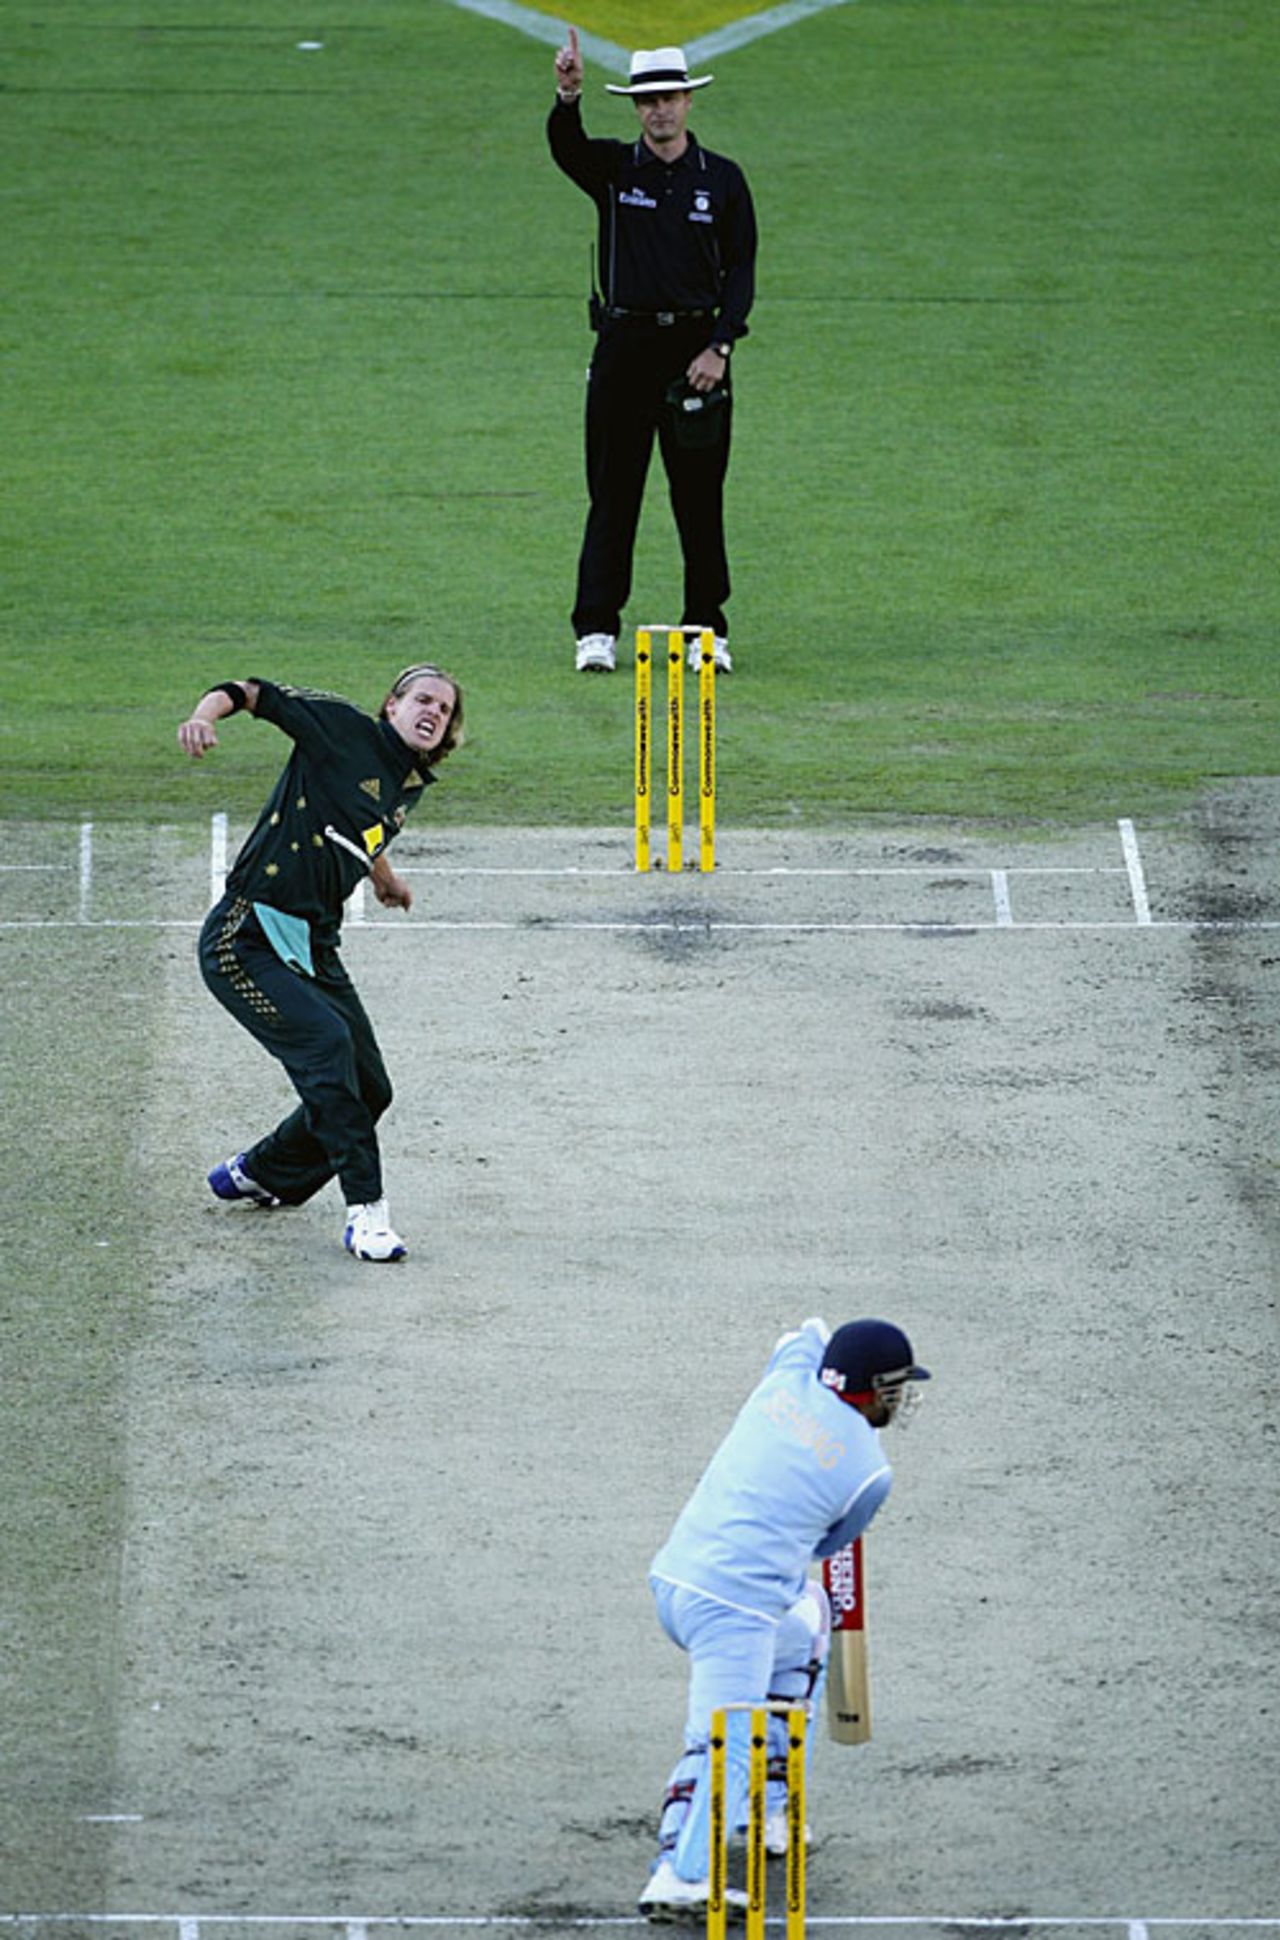 Nathan Bracken trapped Virender Sehwag lbw, Australia v India, CB Series, 4th ODI, Melbourne, February 10, 2008